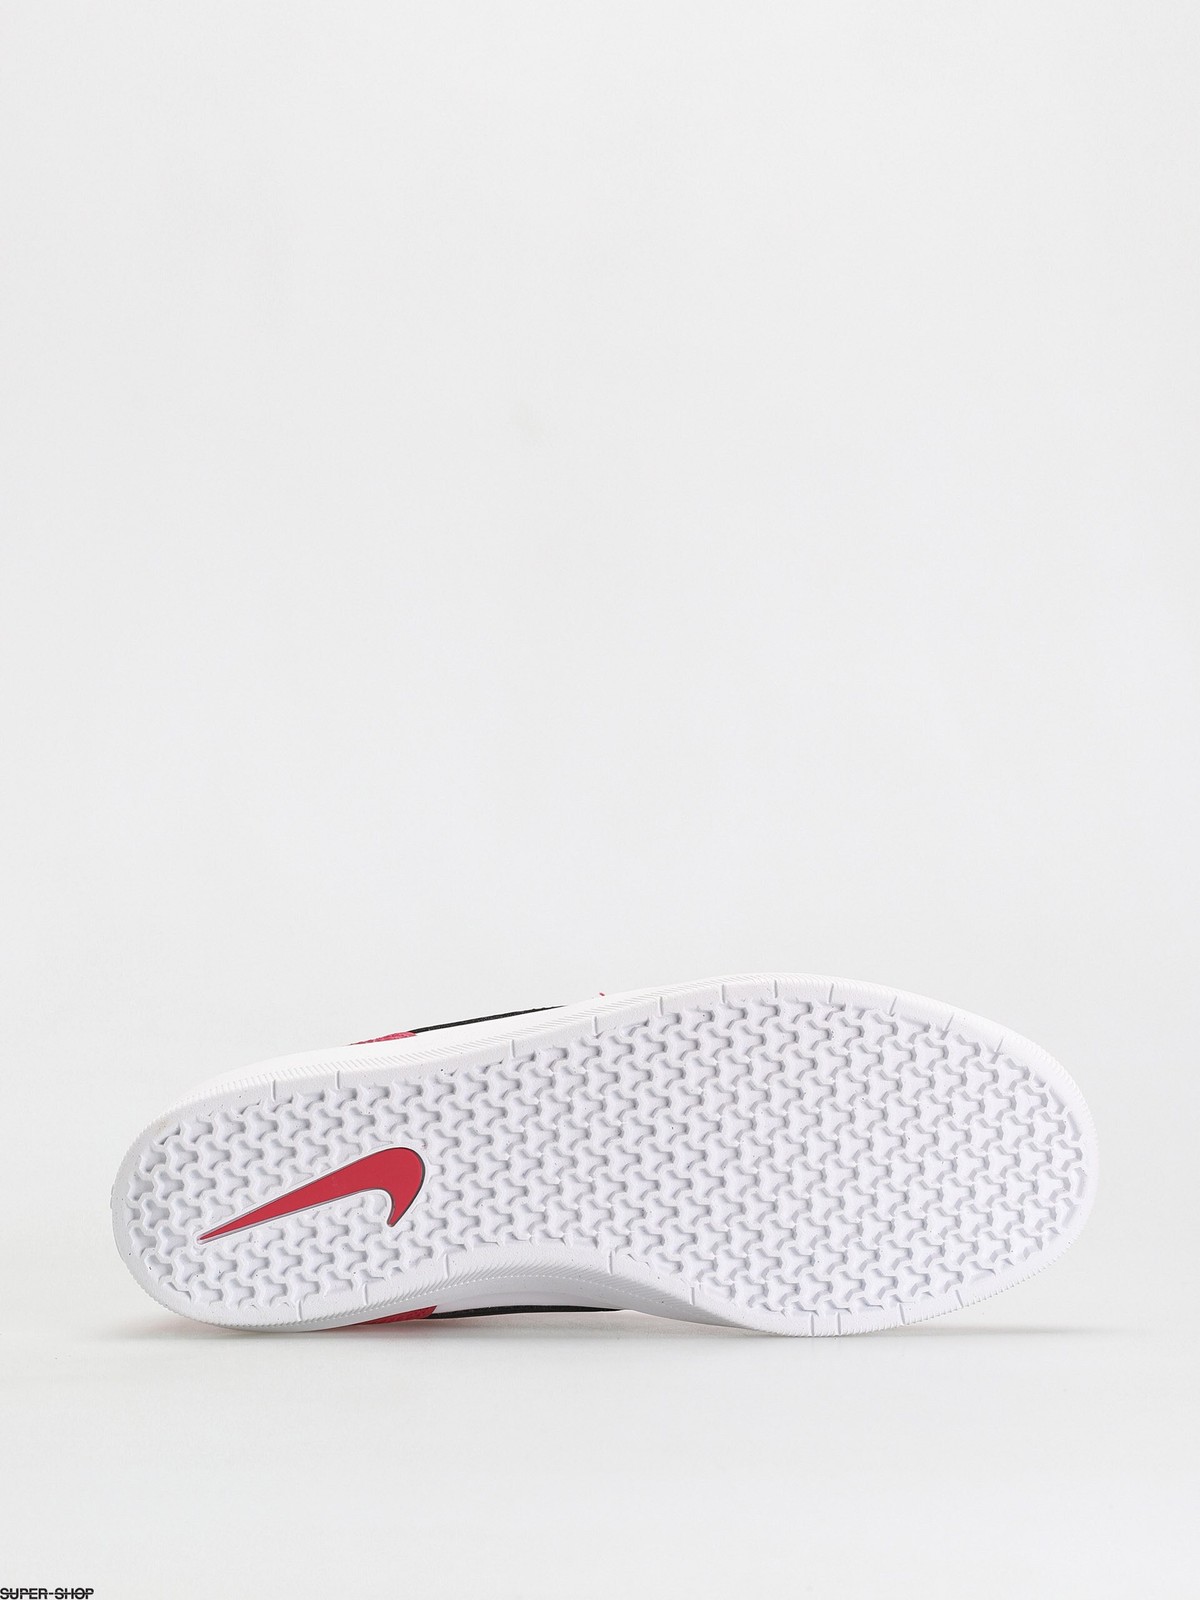 PARCELADO] Tênis Nike SB Force 58 Premium Unissex 176189 - Canaltech Ofertas